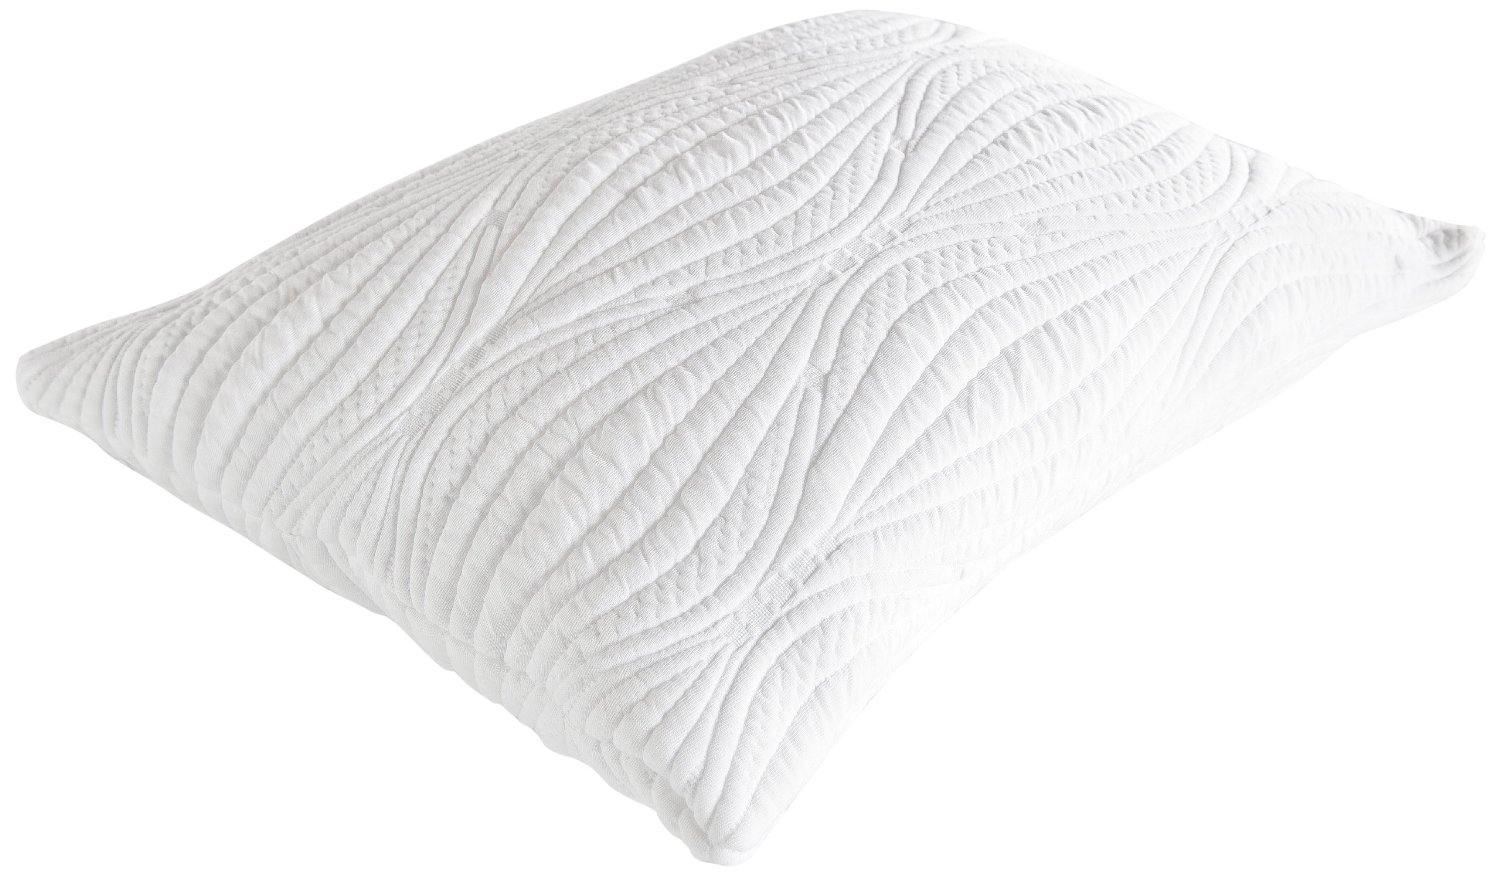 Viscogel-queen-pillow Gel Pillow White Polyester